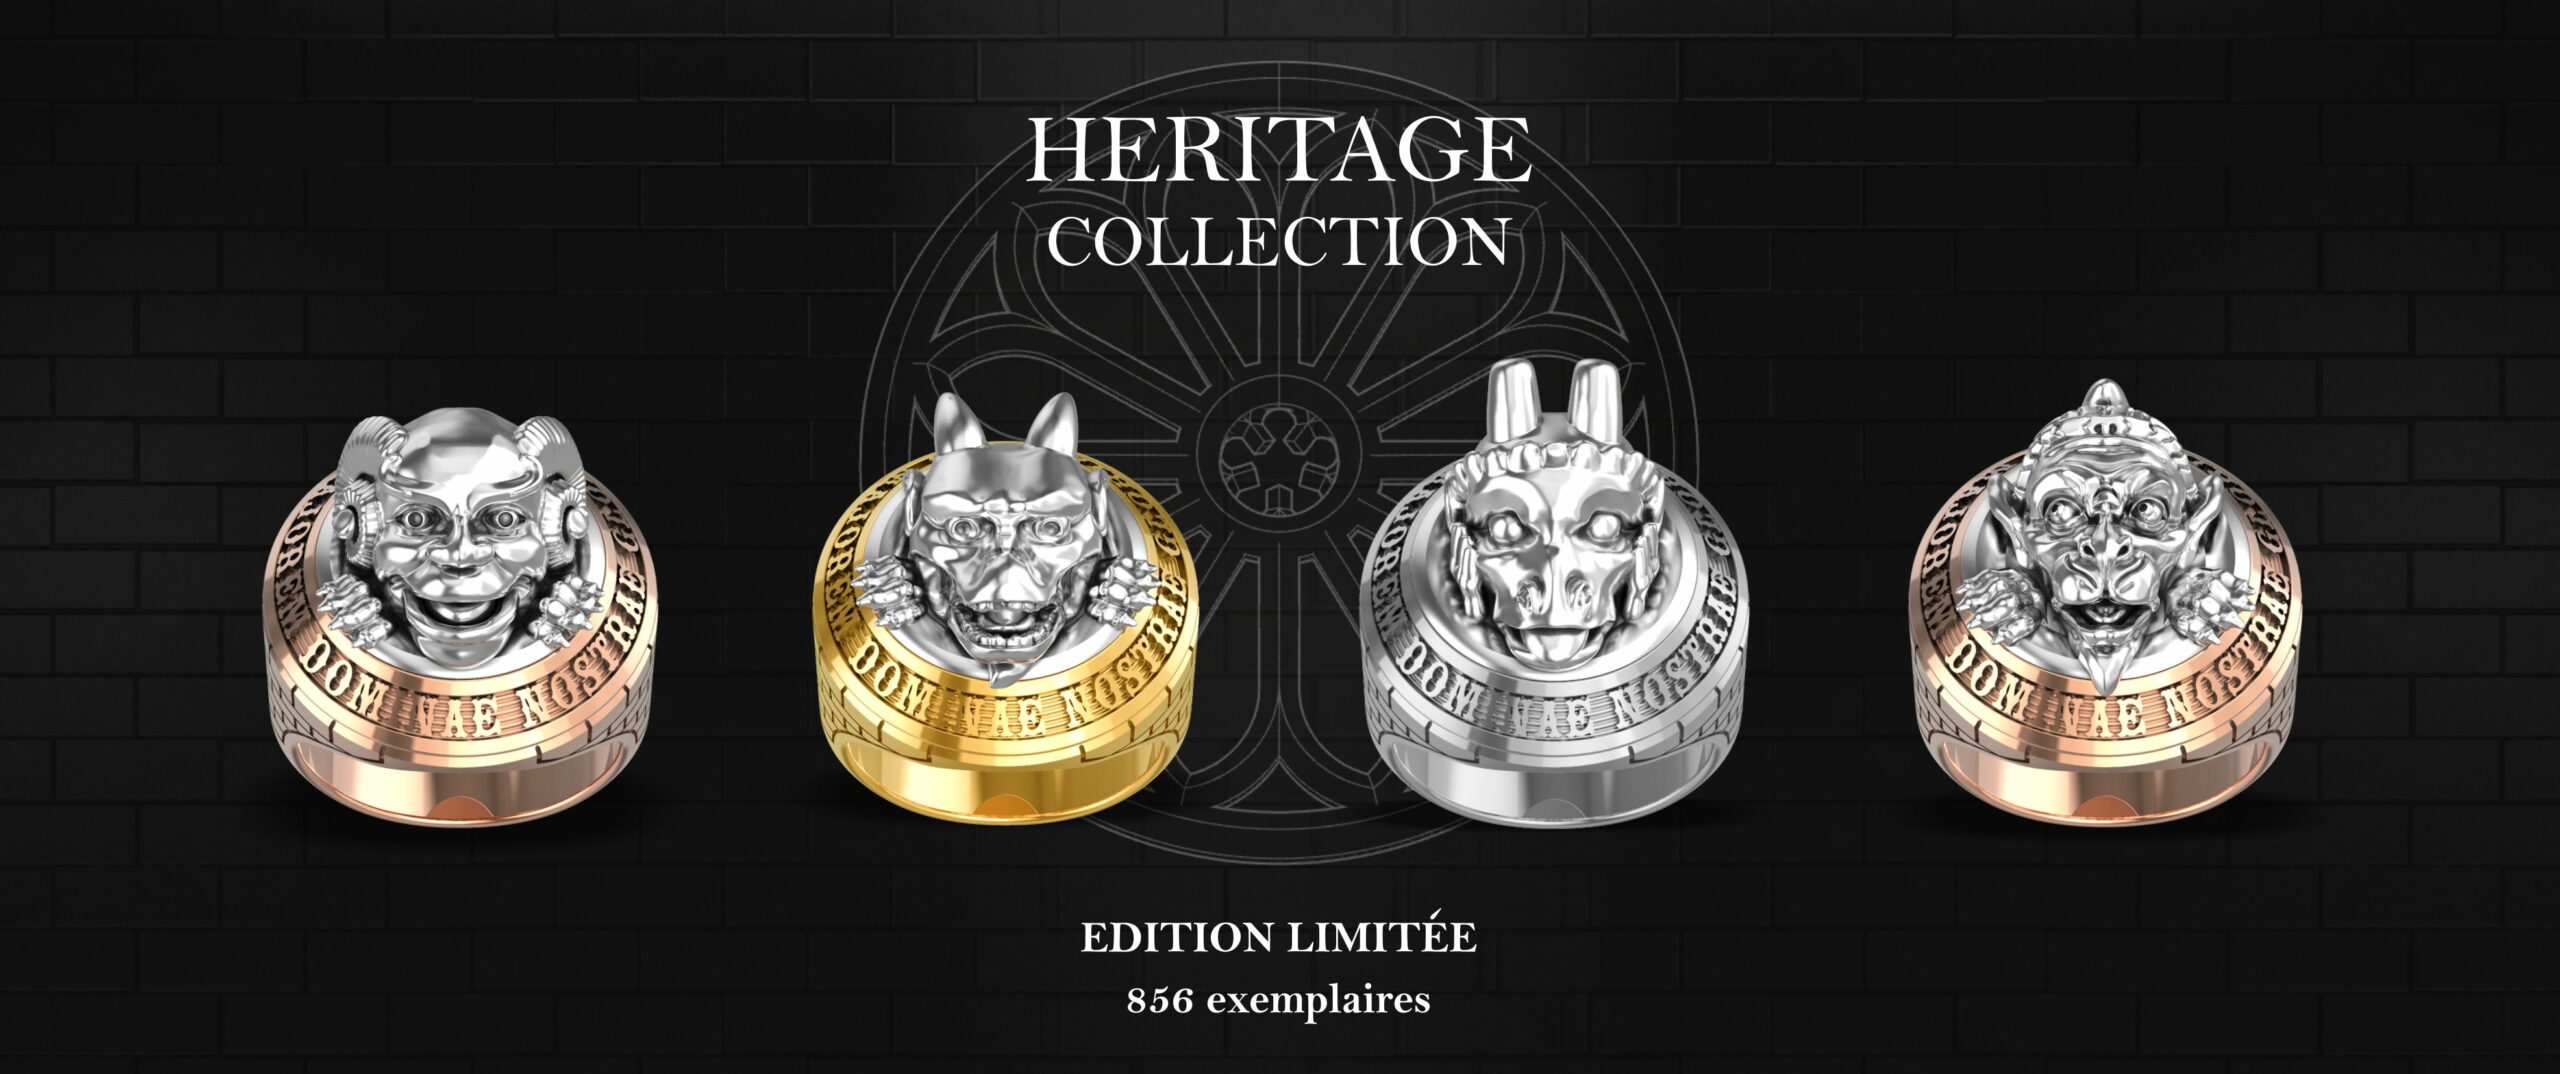 collection-heritage-edition-limitée-bague-joaillerie-or-ethique-nion-eric-joaillier-createur-brest-bretagne